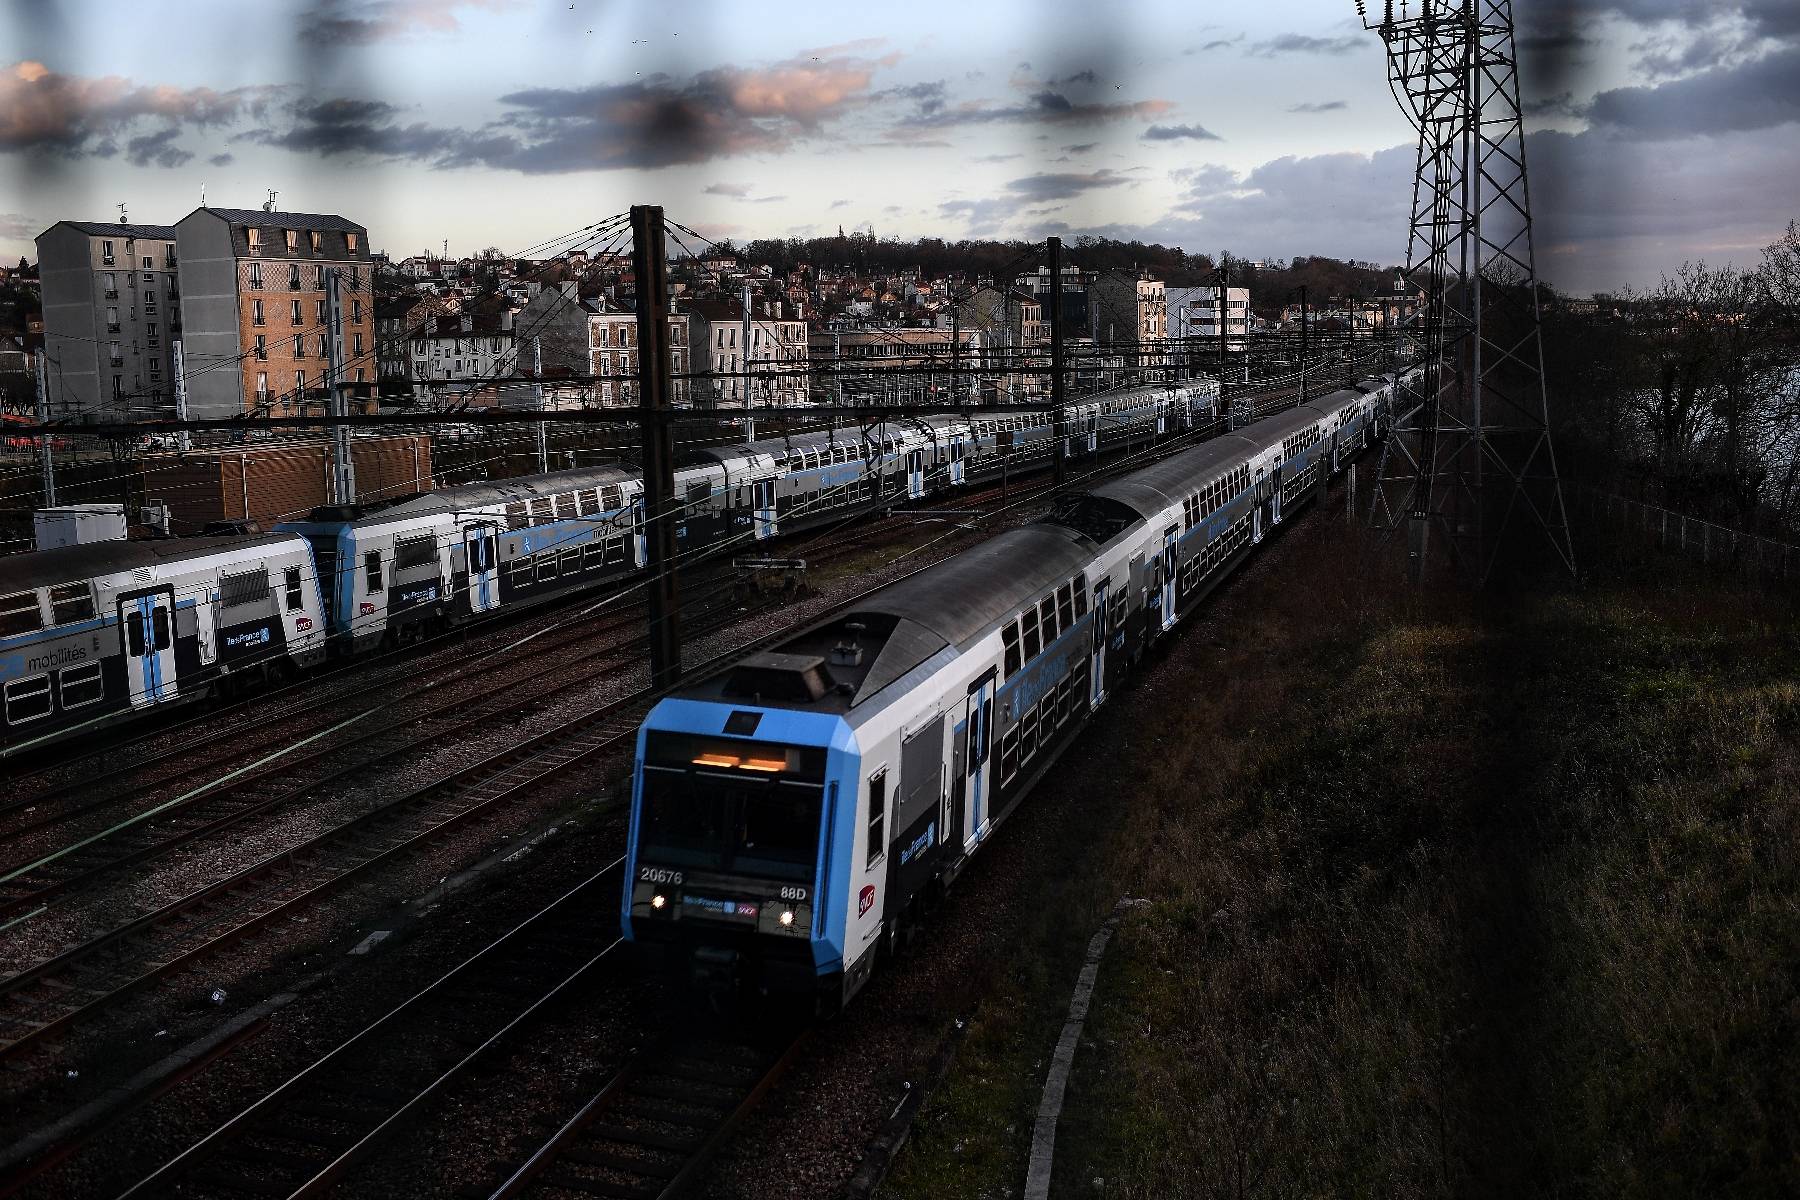 Des RER dans 12 villes, nouvelles lignes, rénovations: 100 milliards d'euros pour le ferroviaire